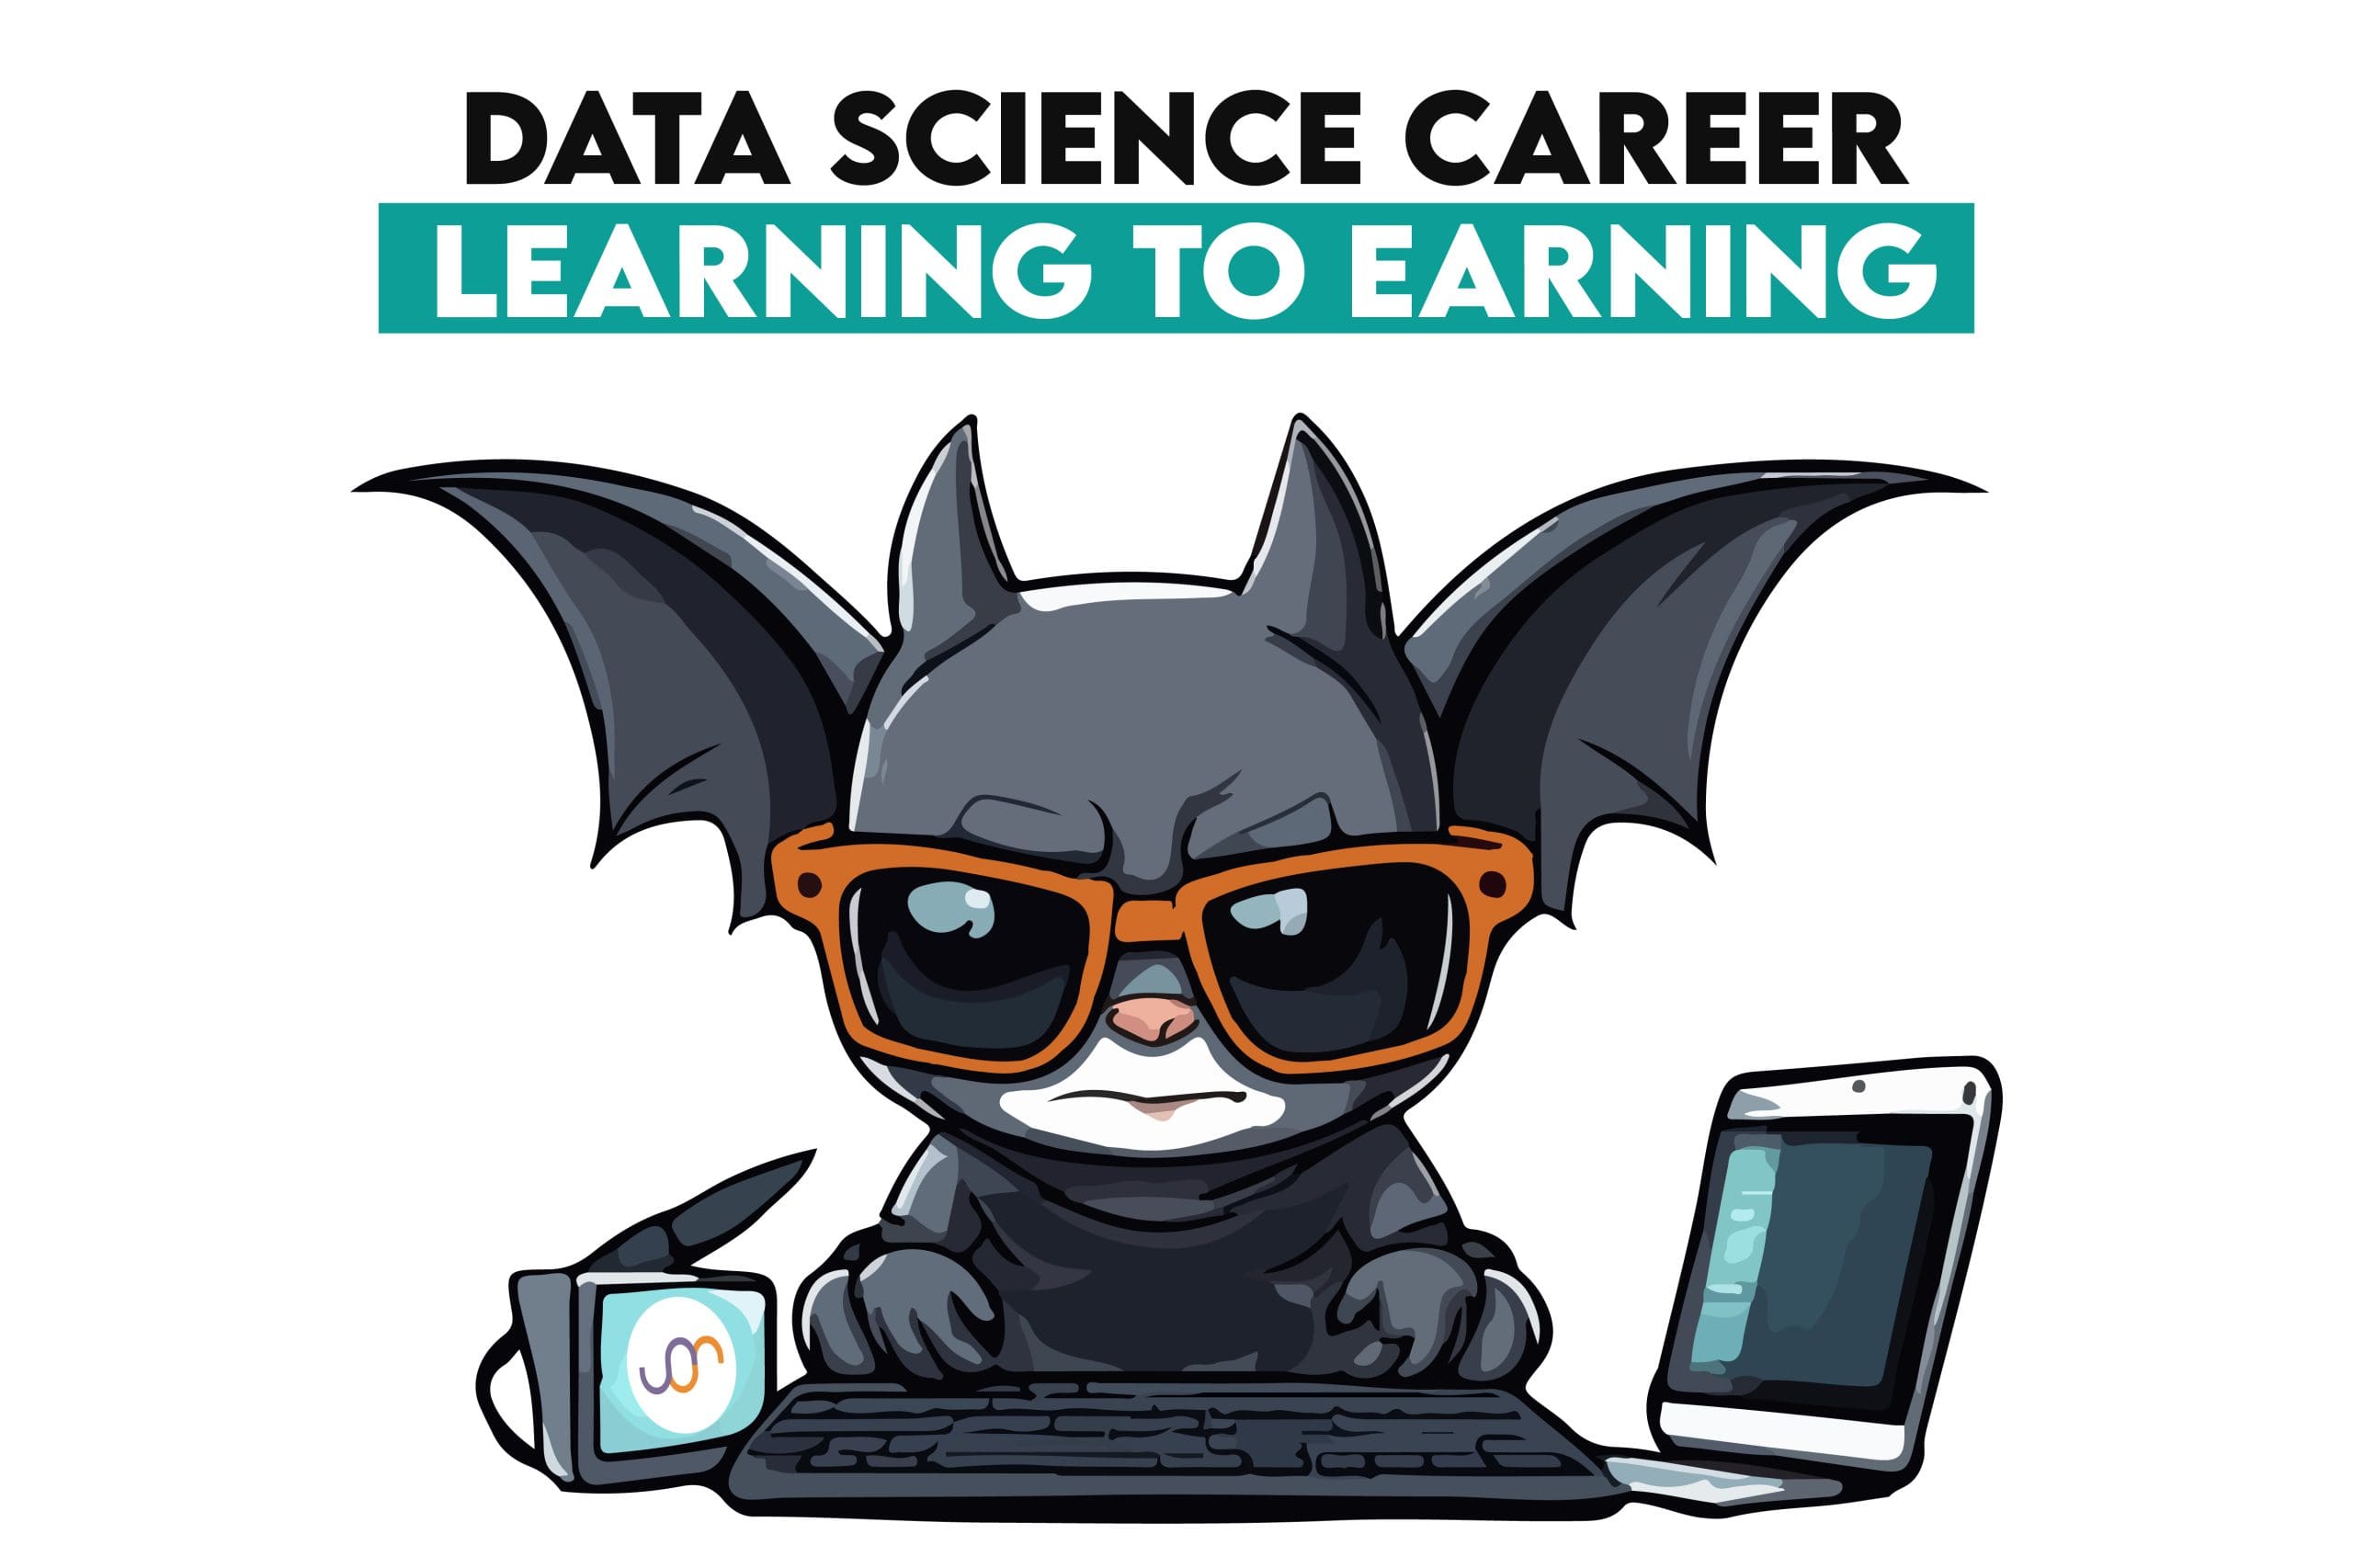 So steuern Sie Ihre Karriere im Bereich Data Science